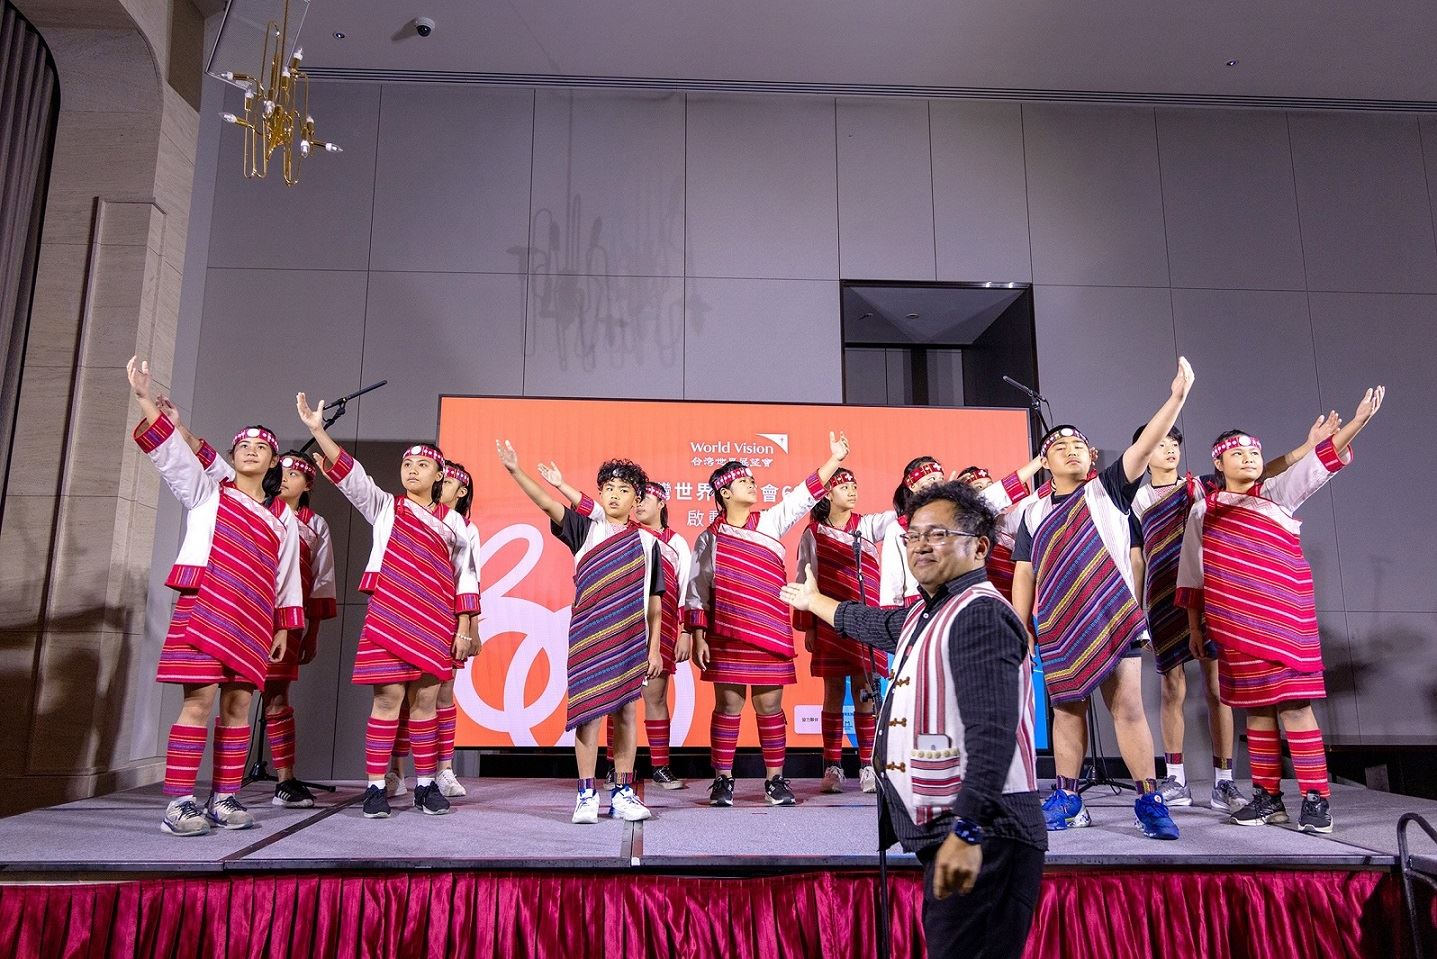 台灣世界展望會培力錦屏國小泰雅兒童合唱團，提升孩子自我文化的認同、建立孩子的自信心及勇氣等正面價值，讓每一個兒少獲得豐盛的生命。